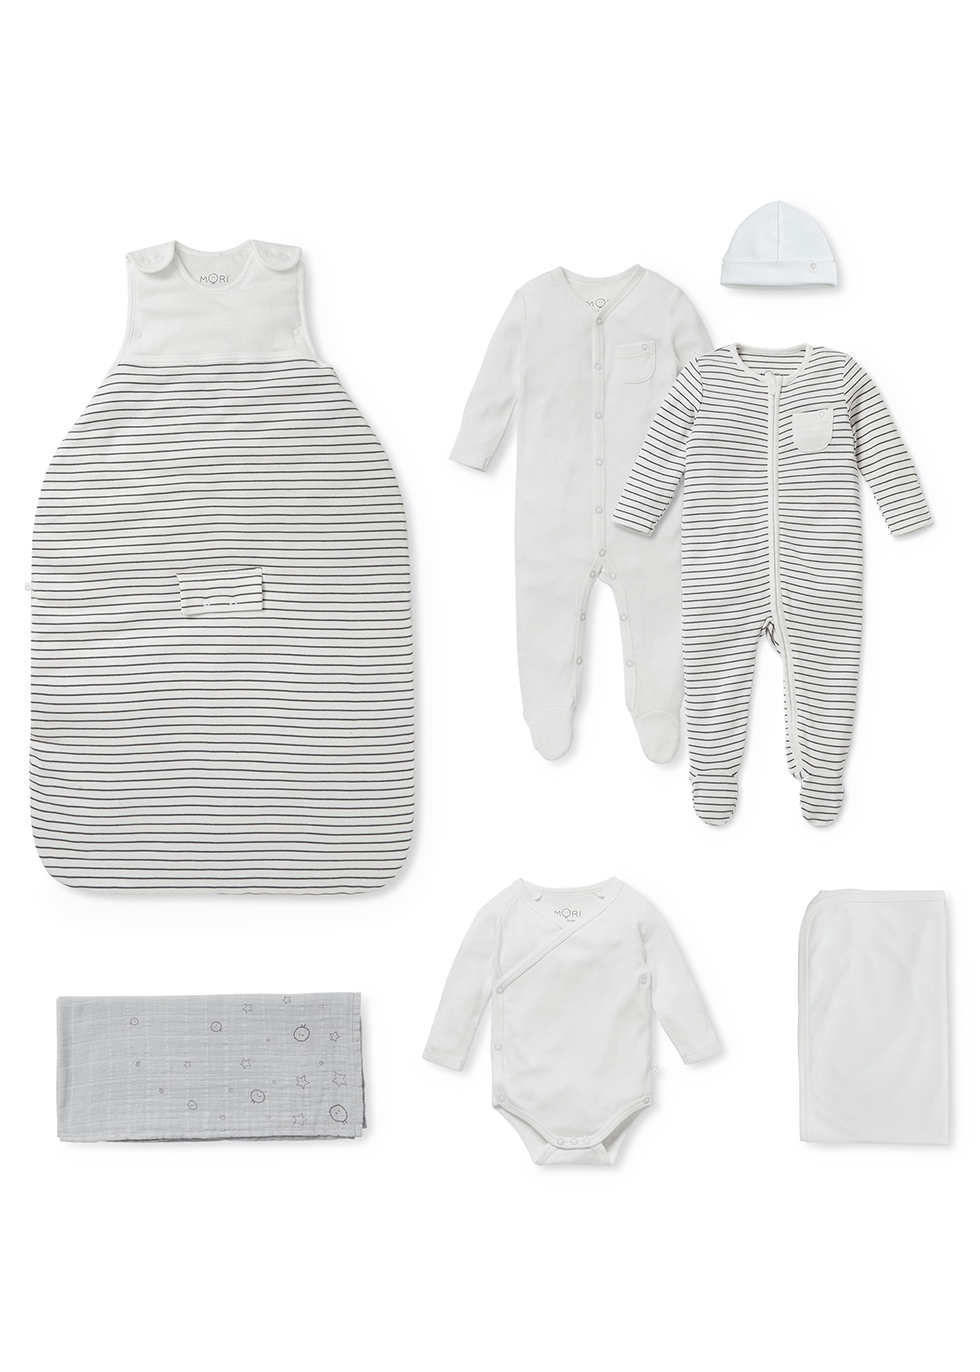 Mori Babies' My First Summer Striped Jersey Sleep Set (6 Months)